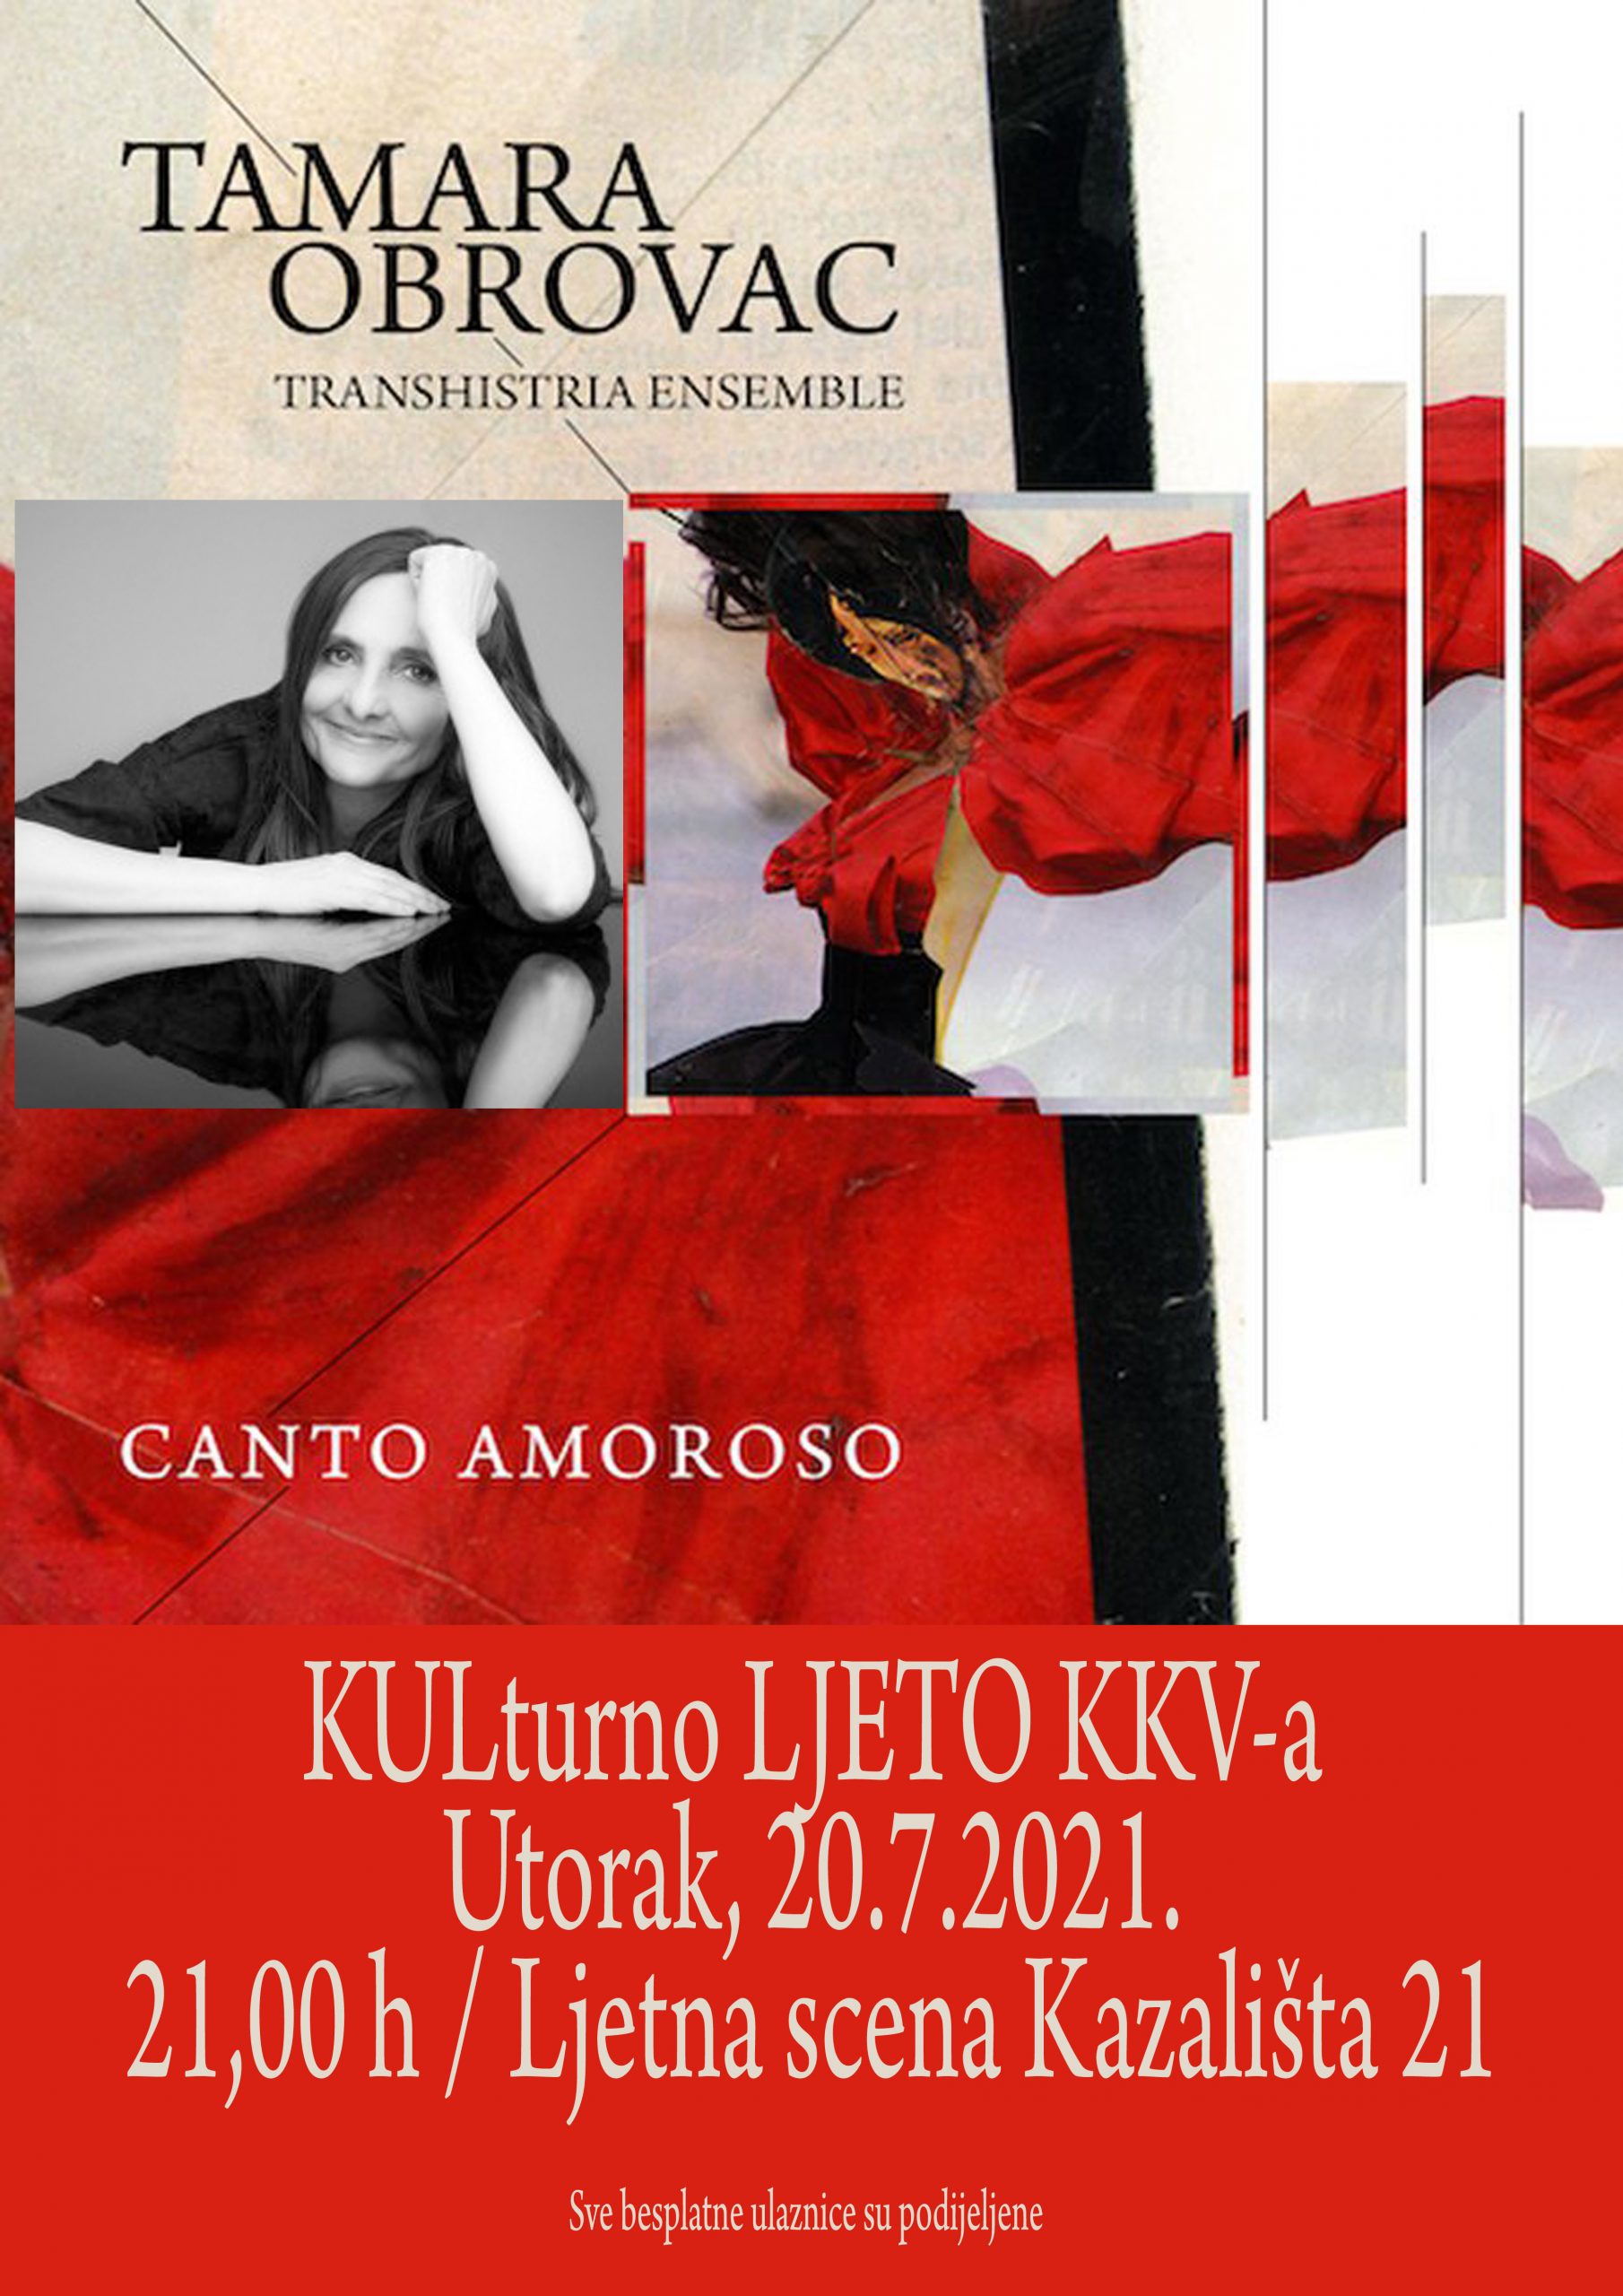 You are currently viewing Koncertom Tamare Obrovac & Transhistria ensemble završava glazbeno kazališni dio KULturnog LJETA KKV-a